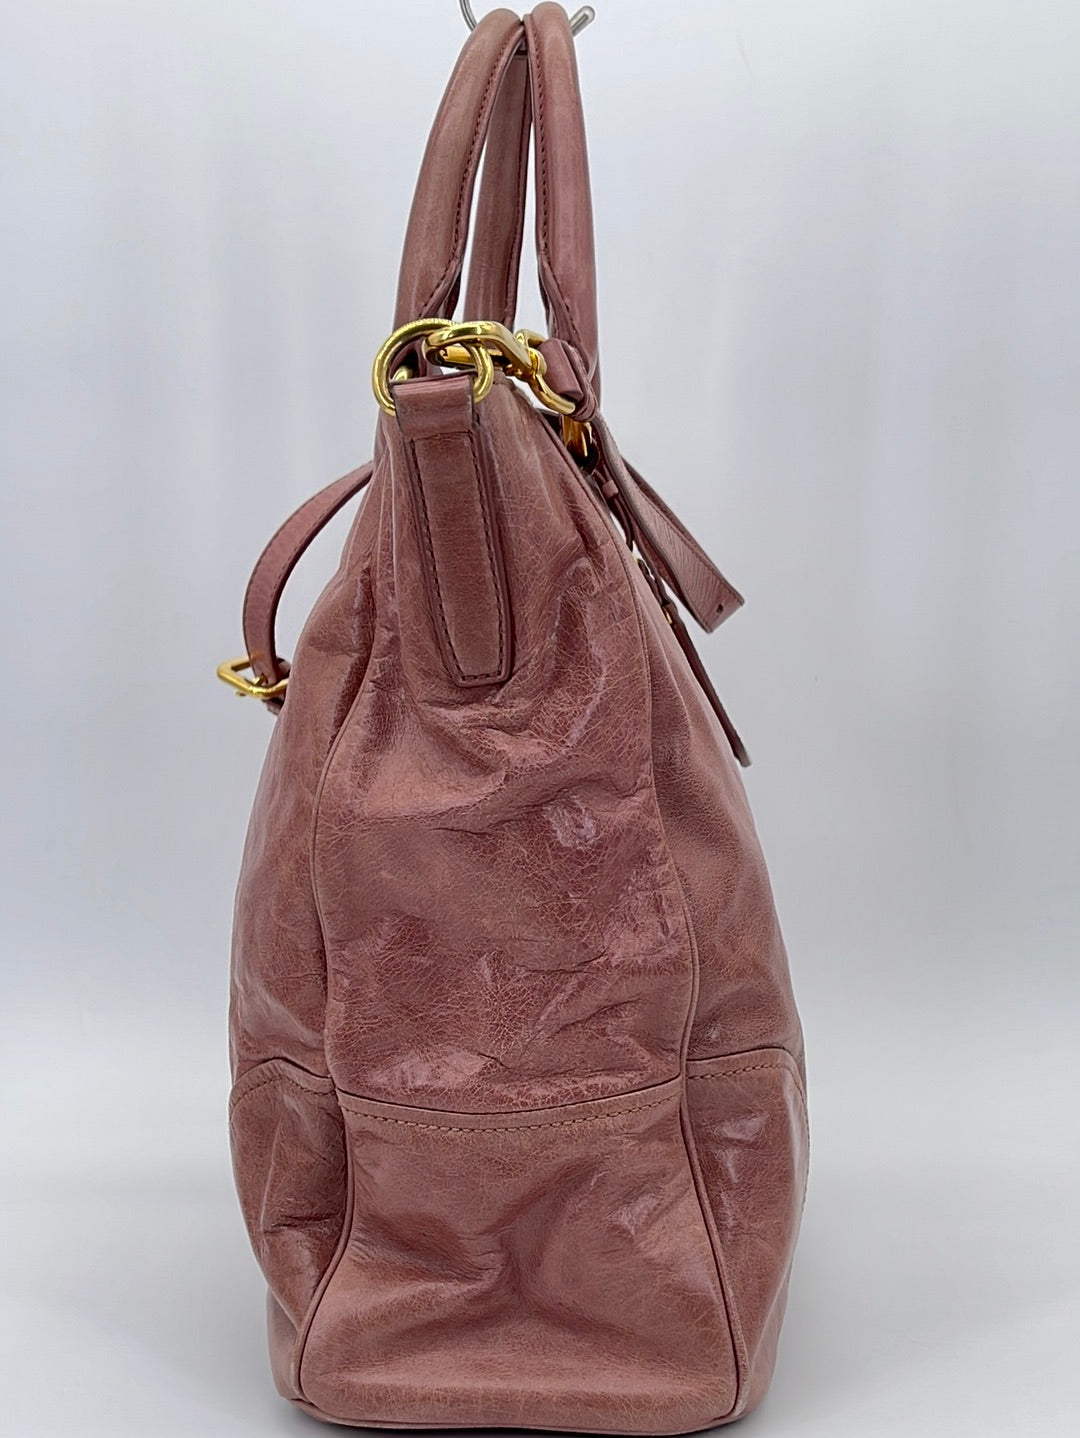 Preloved Prada Gray Vitello Shine Leather Large Hobo Bag 194 092123